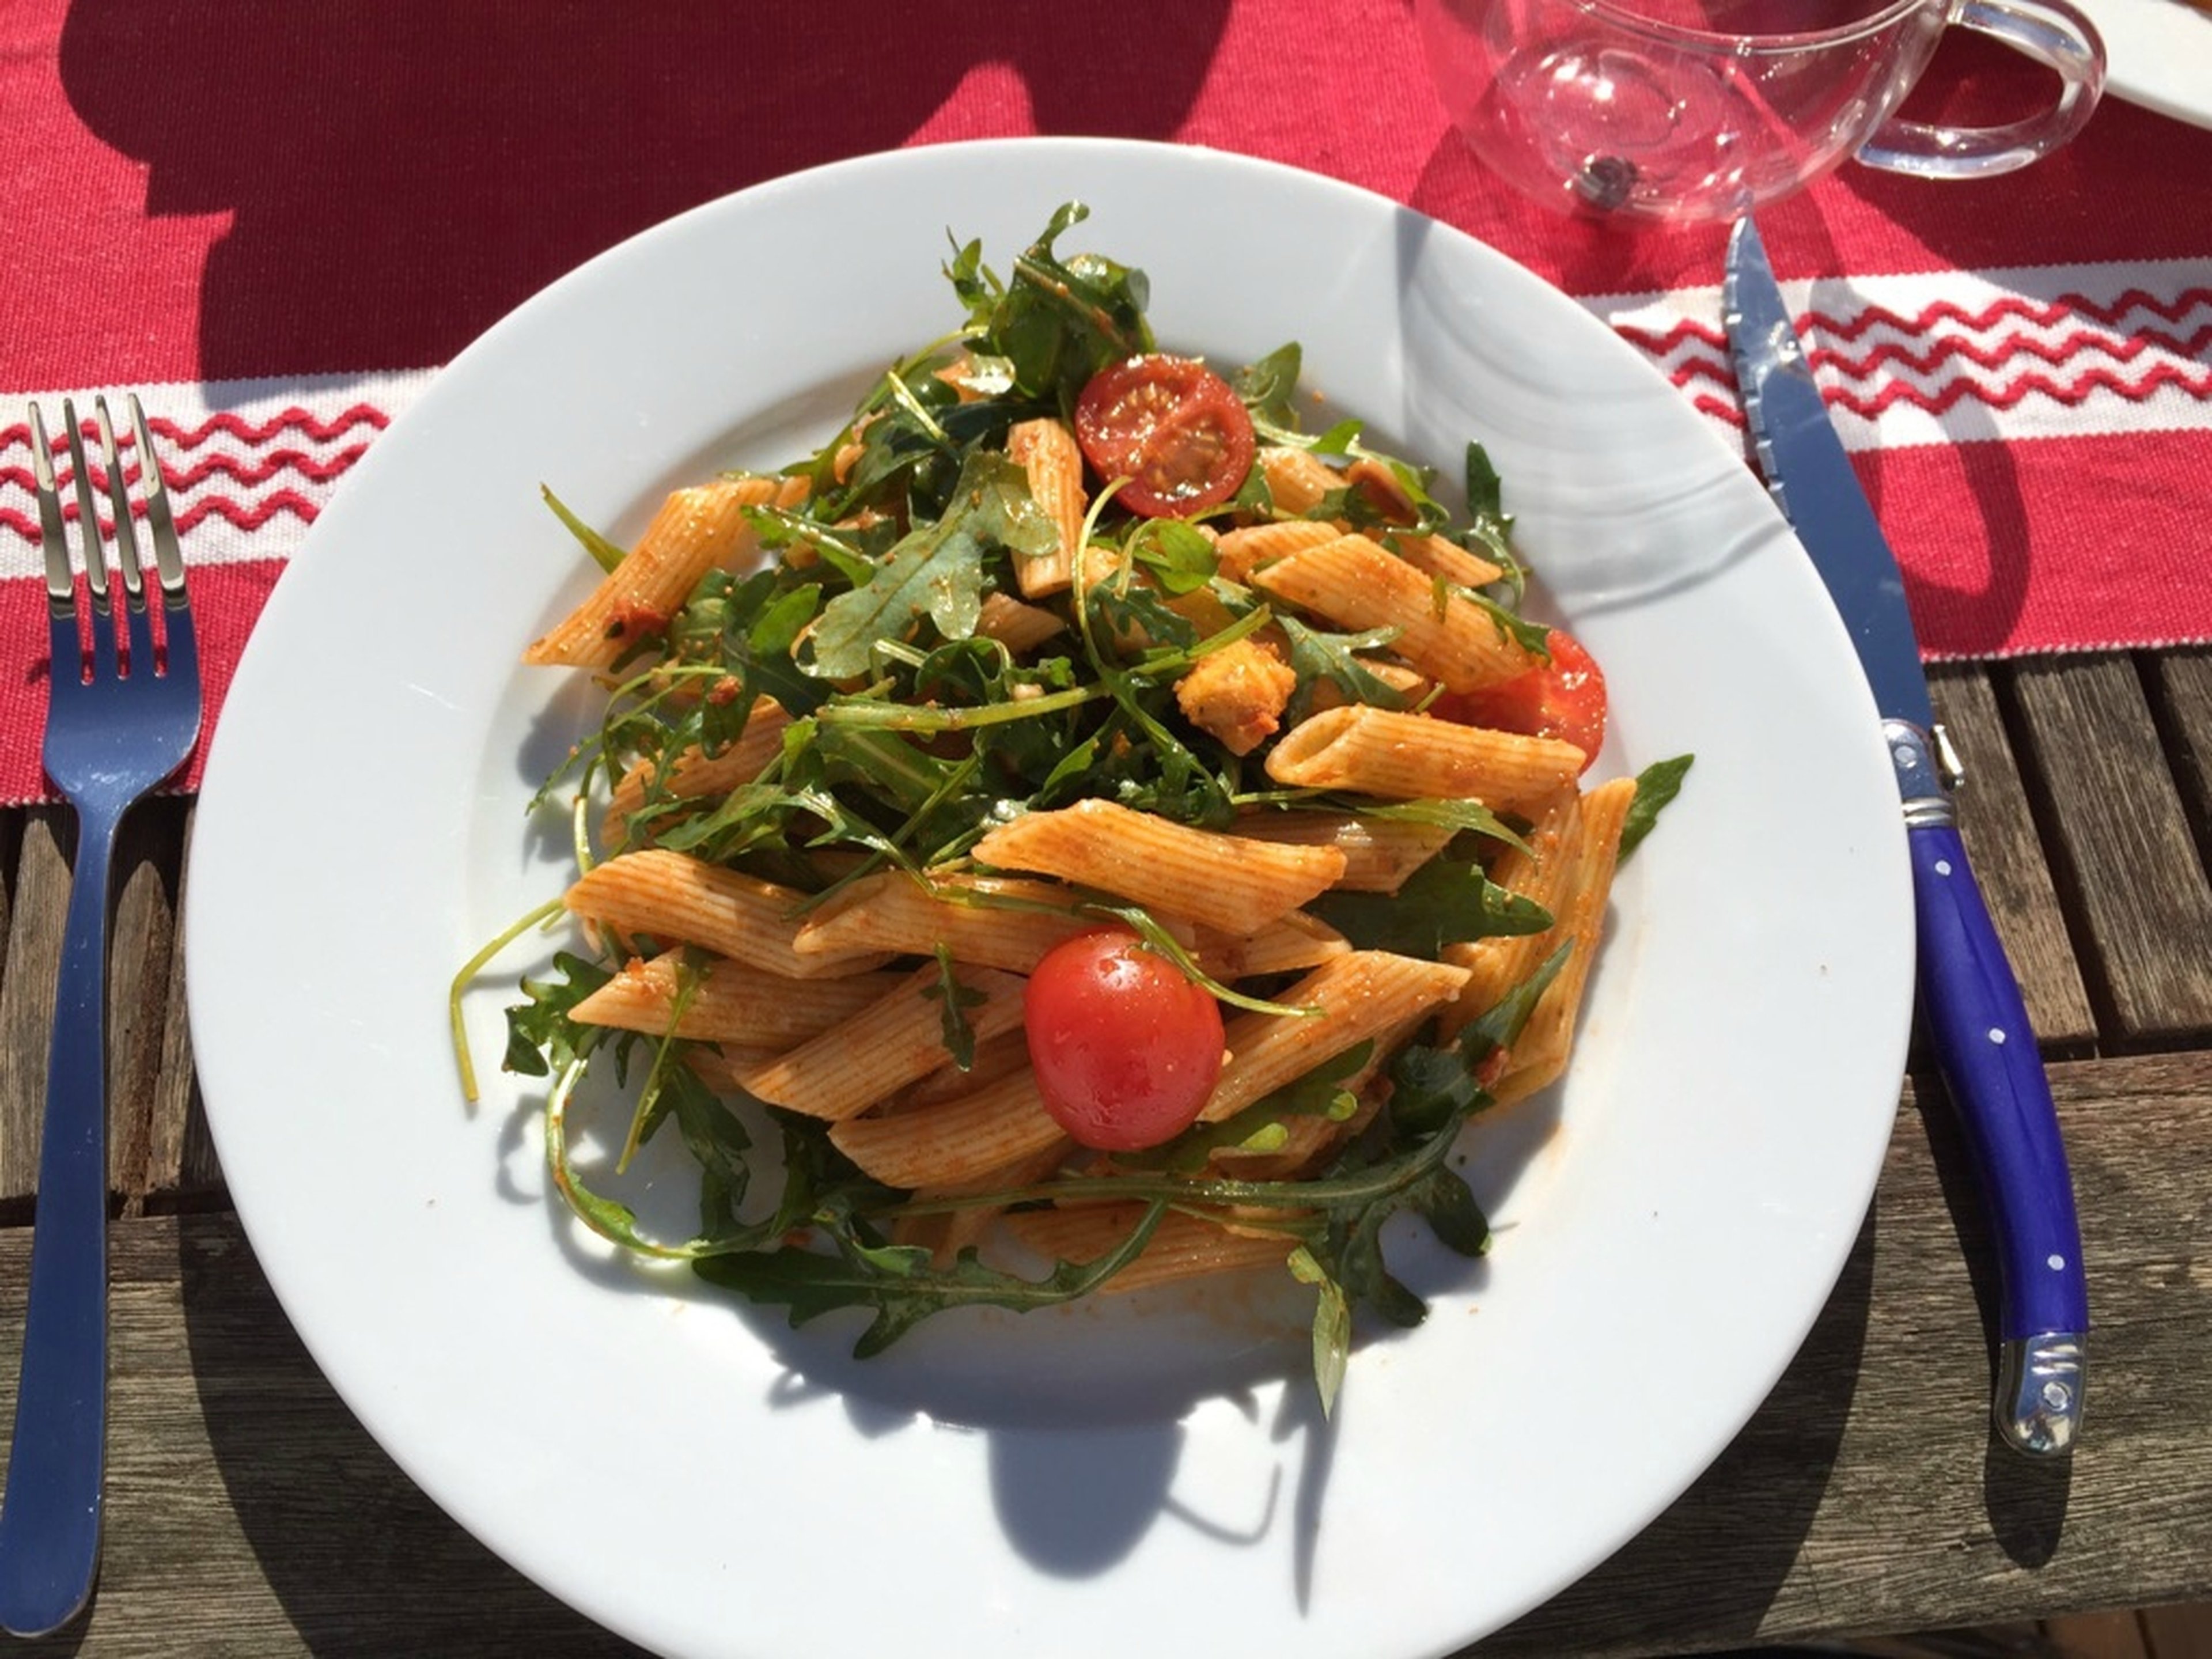 Italian-style pasta salad